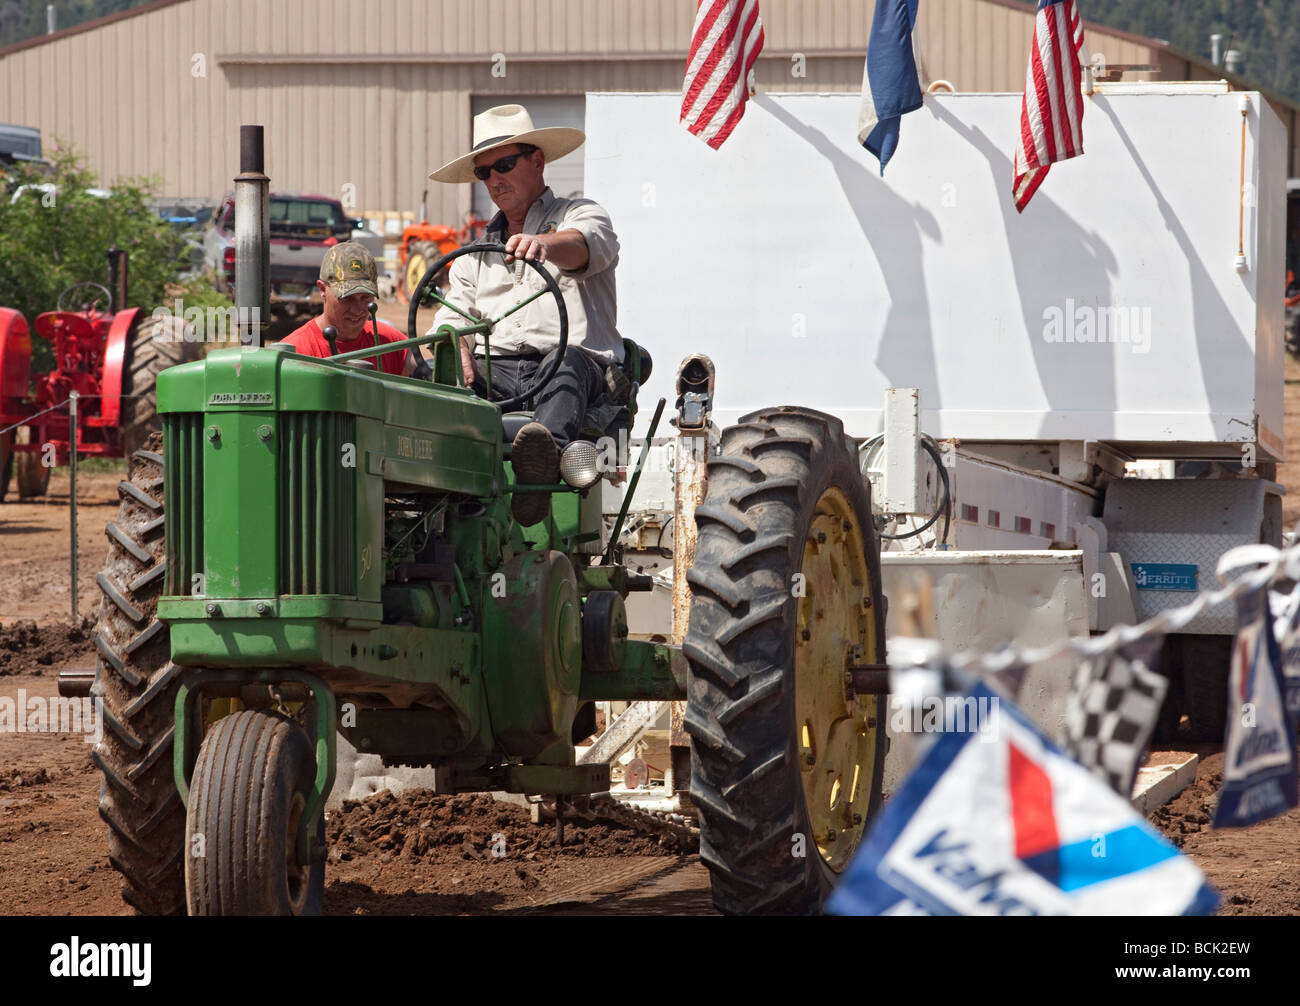 Palmer Lago Colorado il trattore annuale concorso di trazione tra allevatori sulle alte pianure a sud di Denver Foto Stock